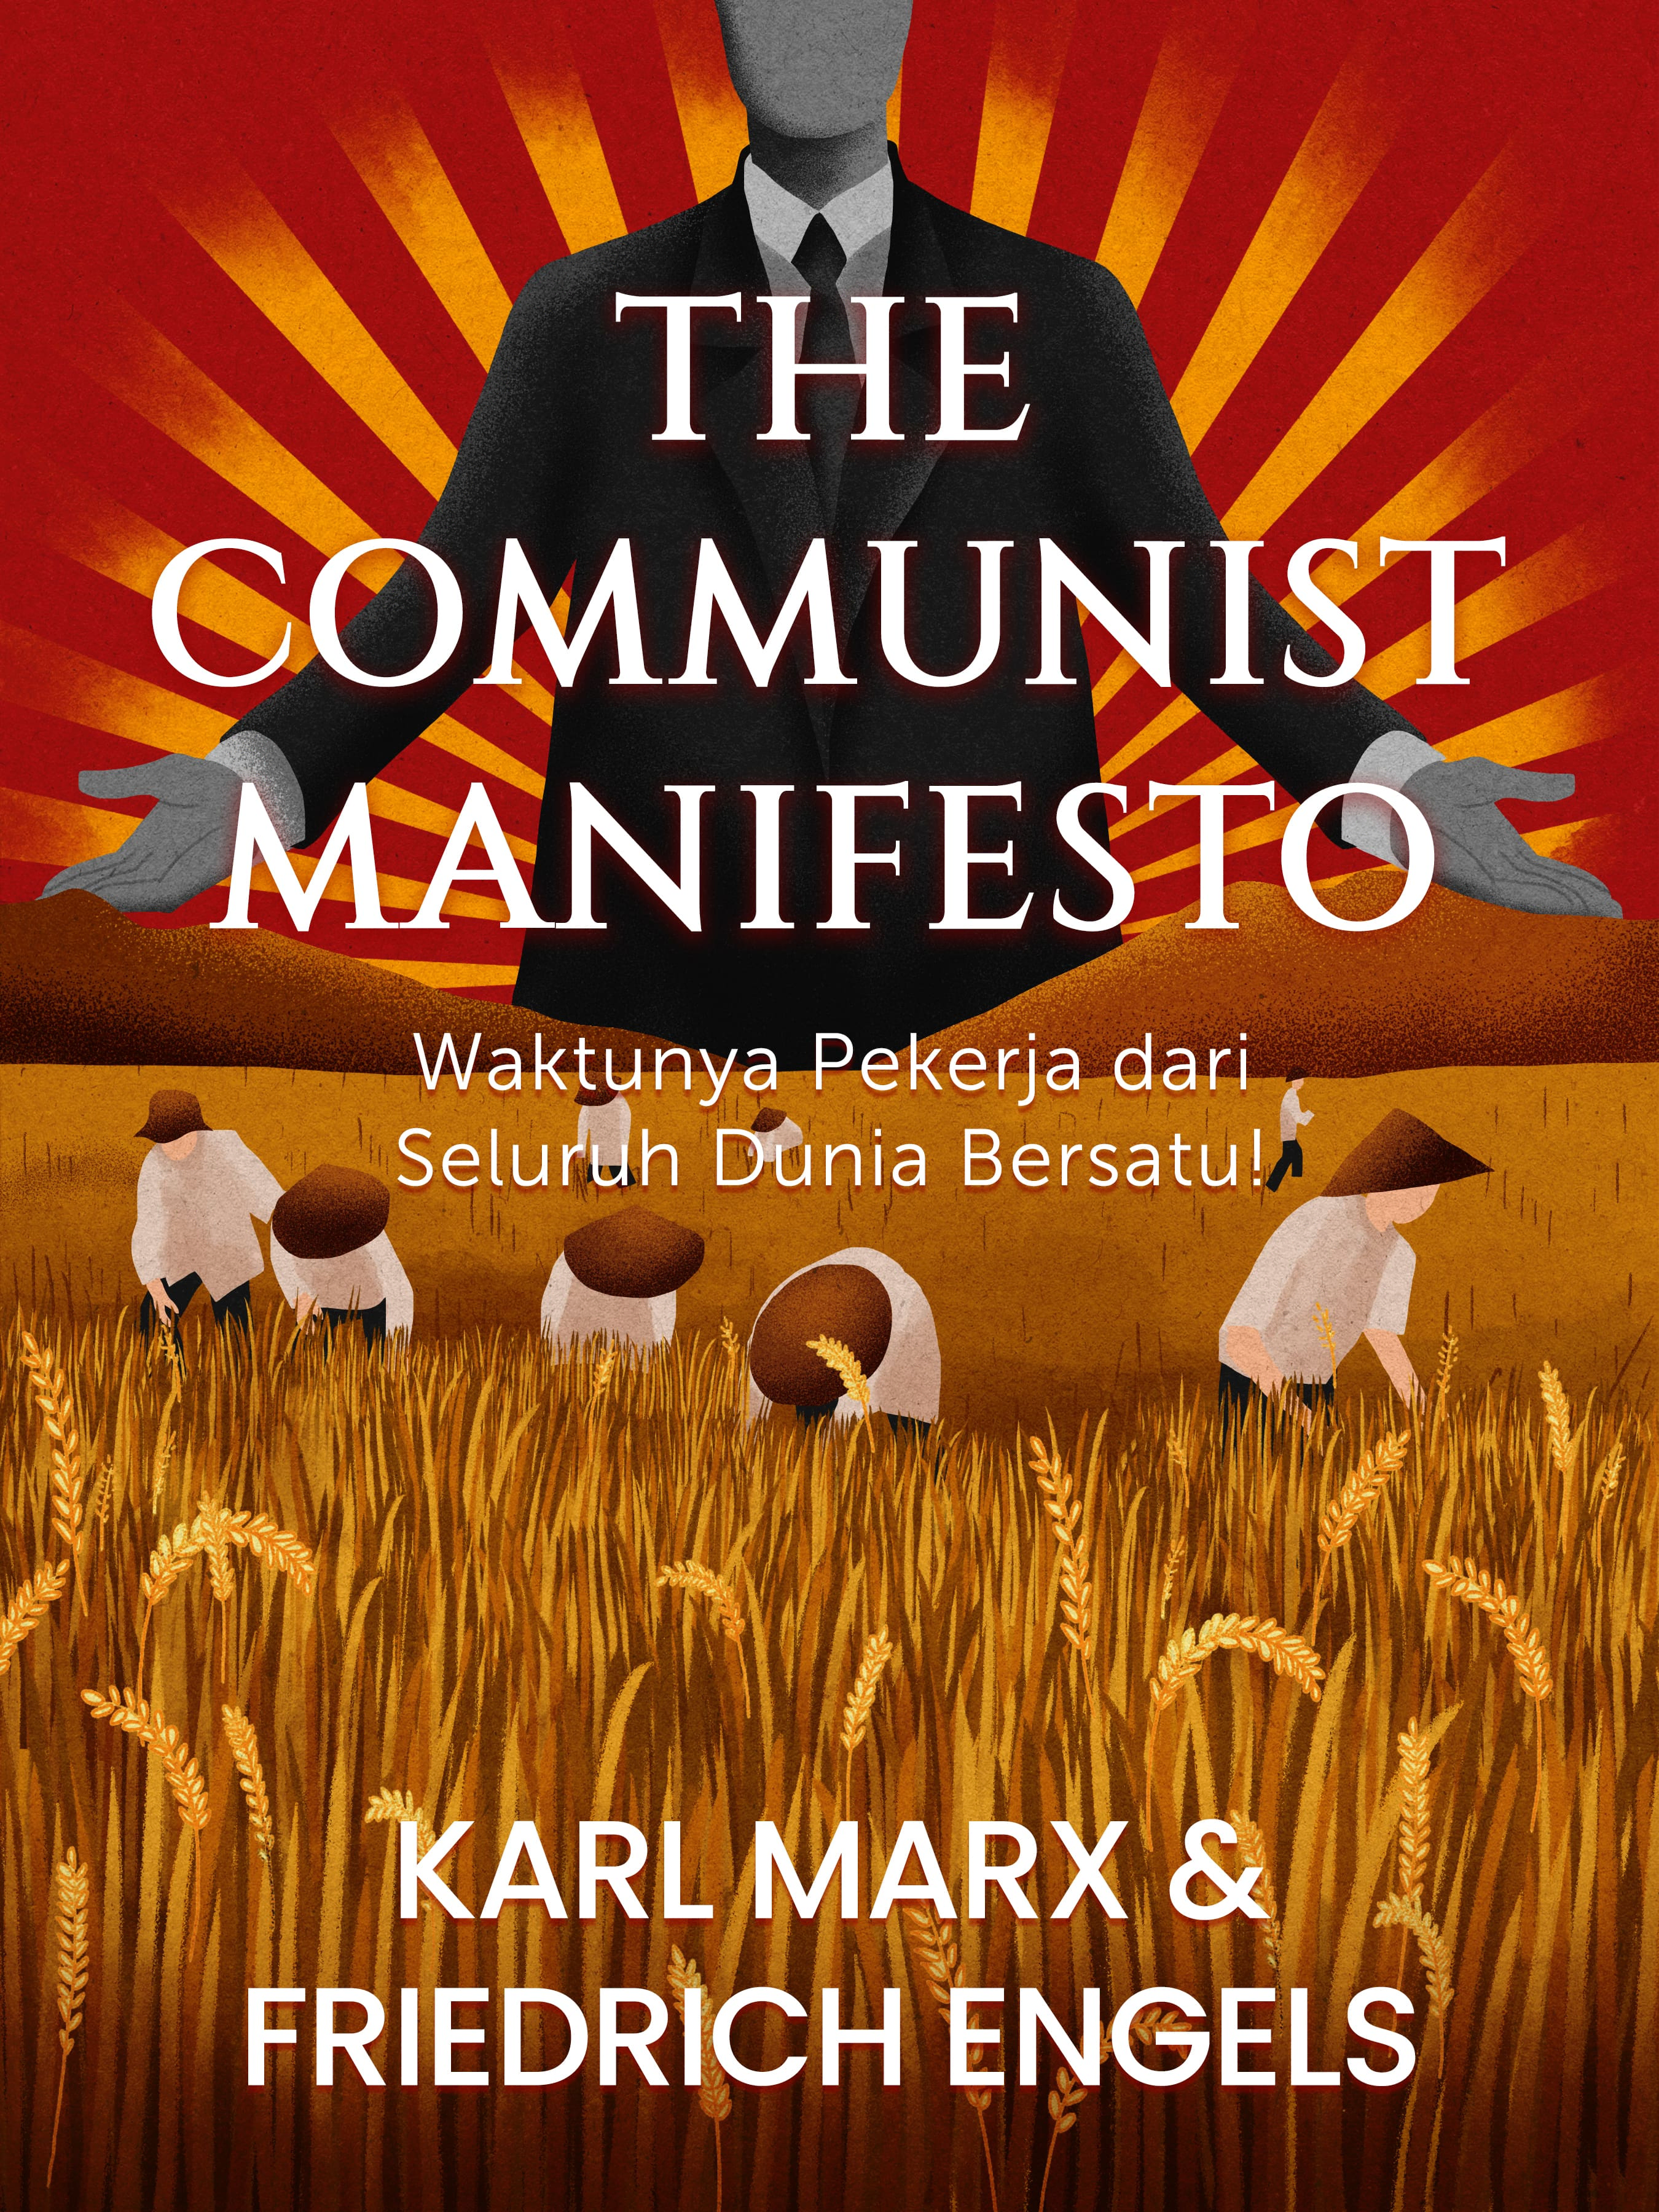 #5 Komunis dan proletariat memiliki tujuan yang sama: menghapuskan properti pribadi dan mengklaim kekuatan politik.